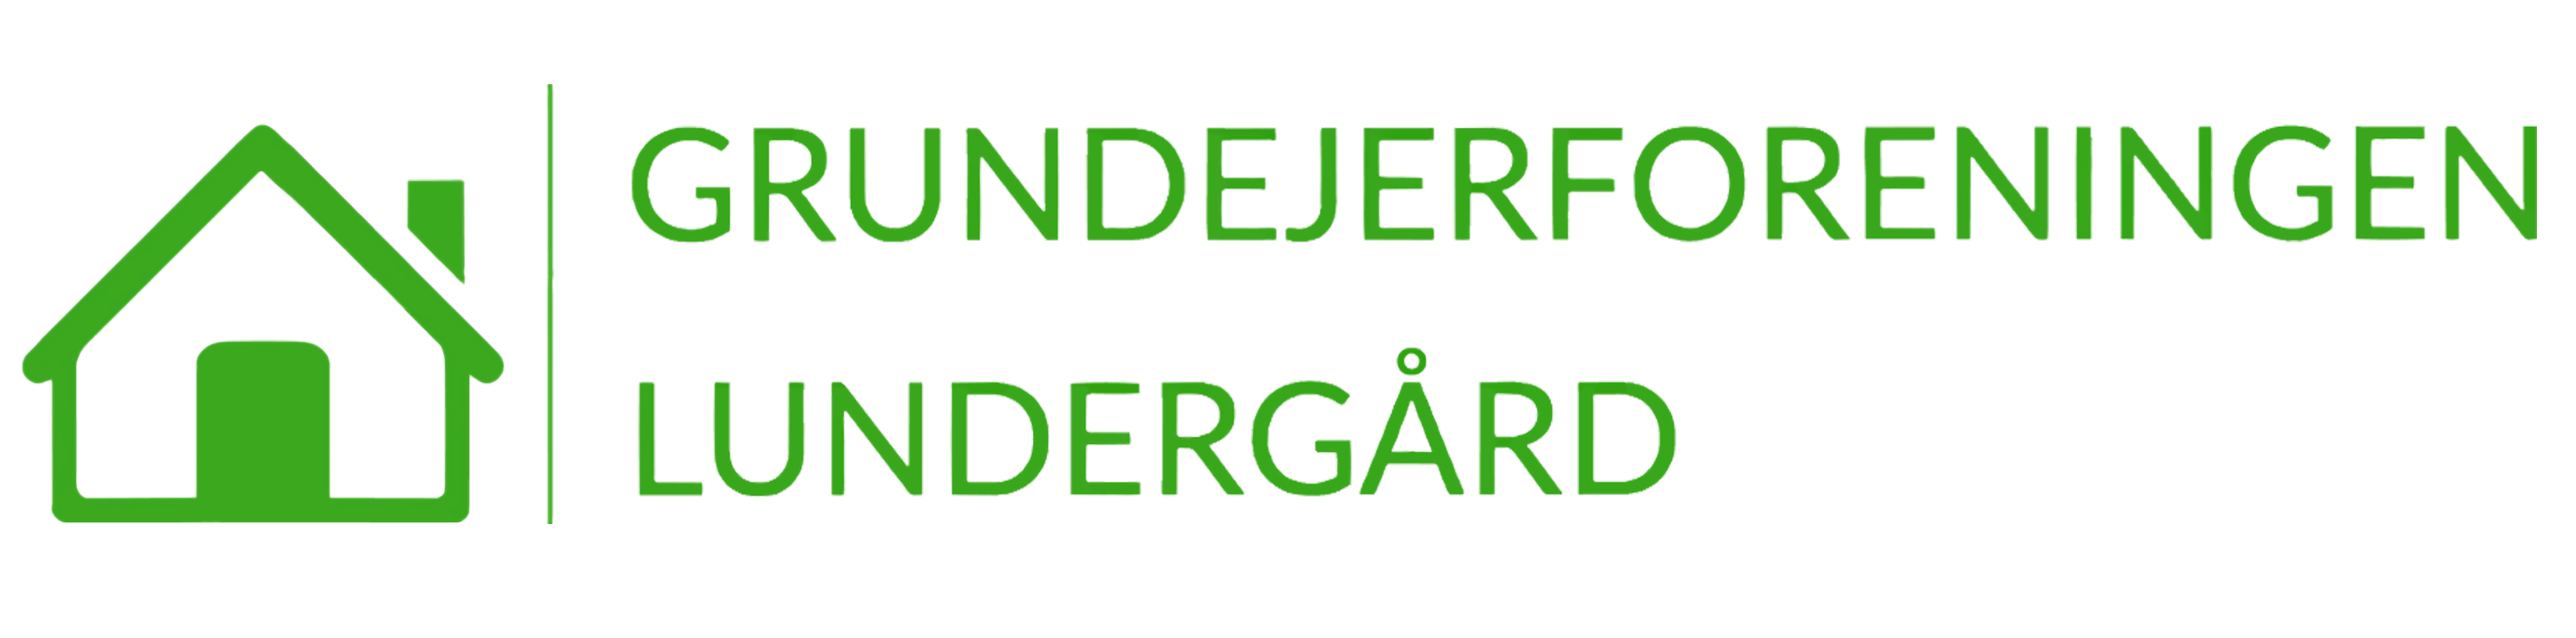 www.lundergård.dk